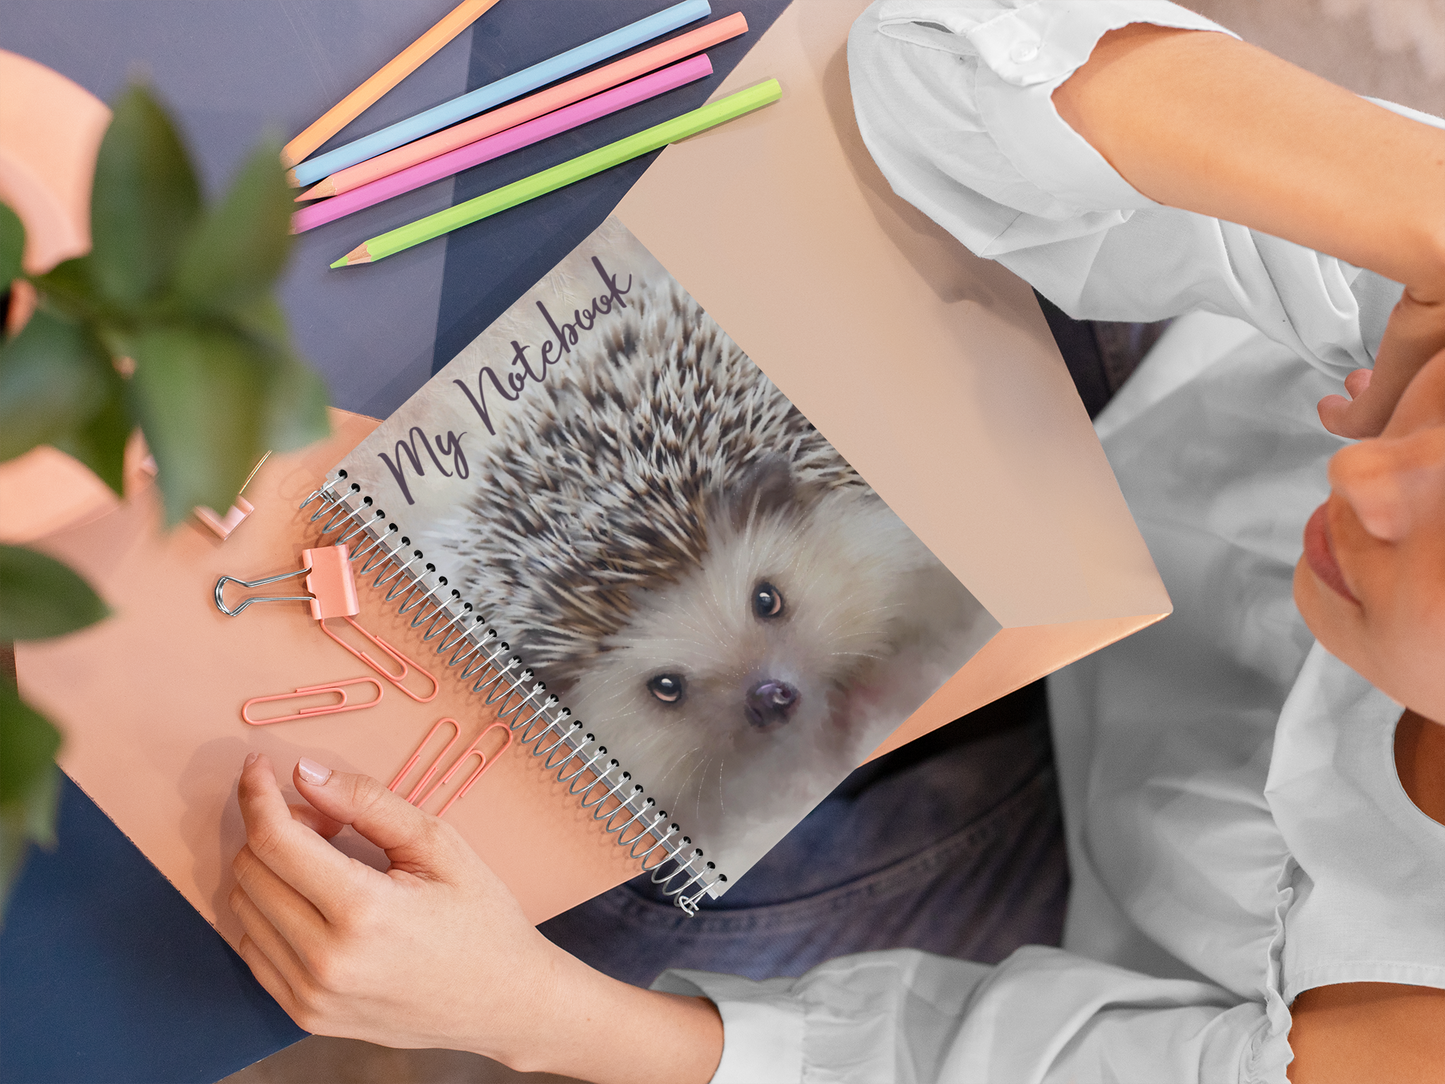 British Wildlife Art Hedgehog Notebook Gift Idea